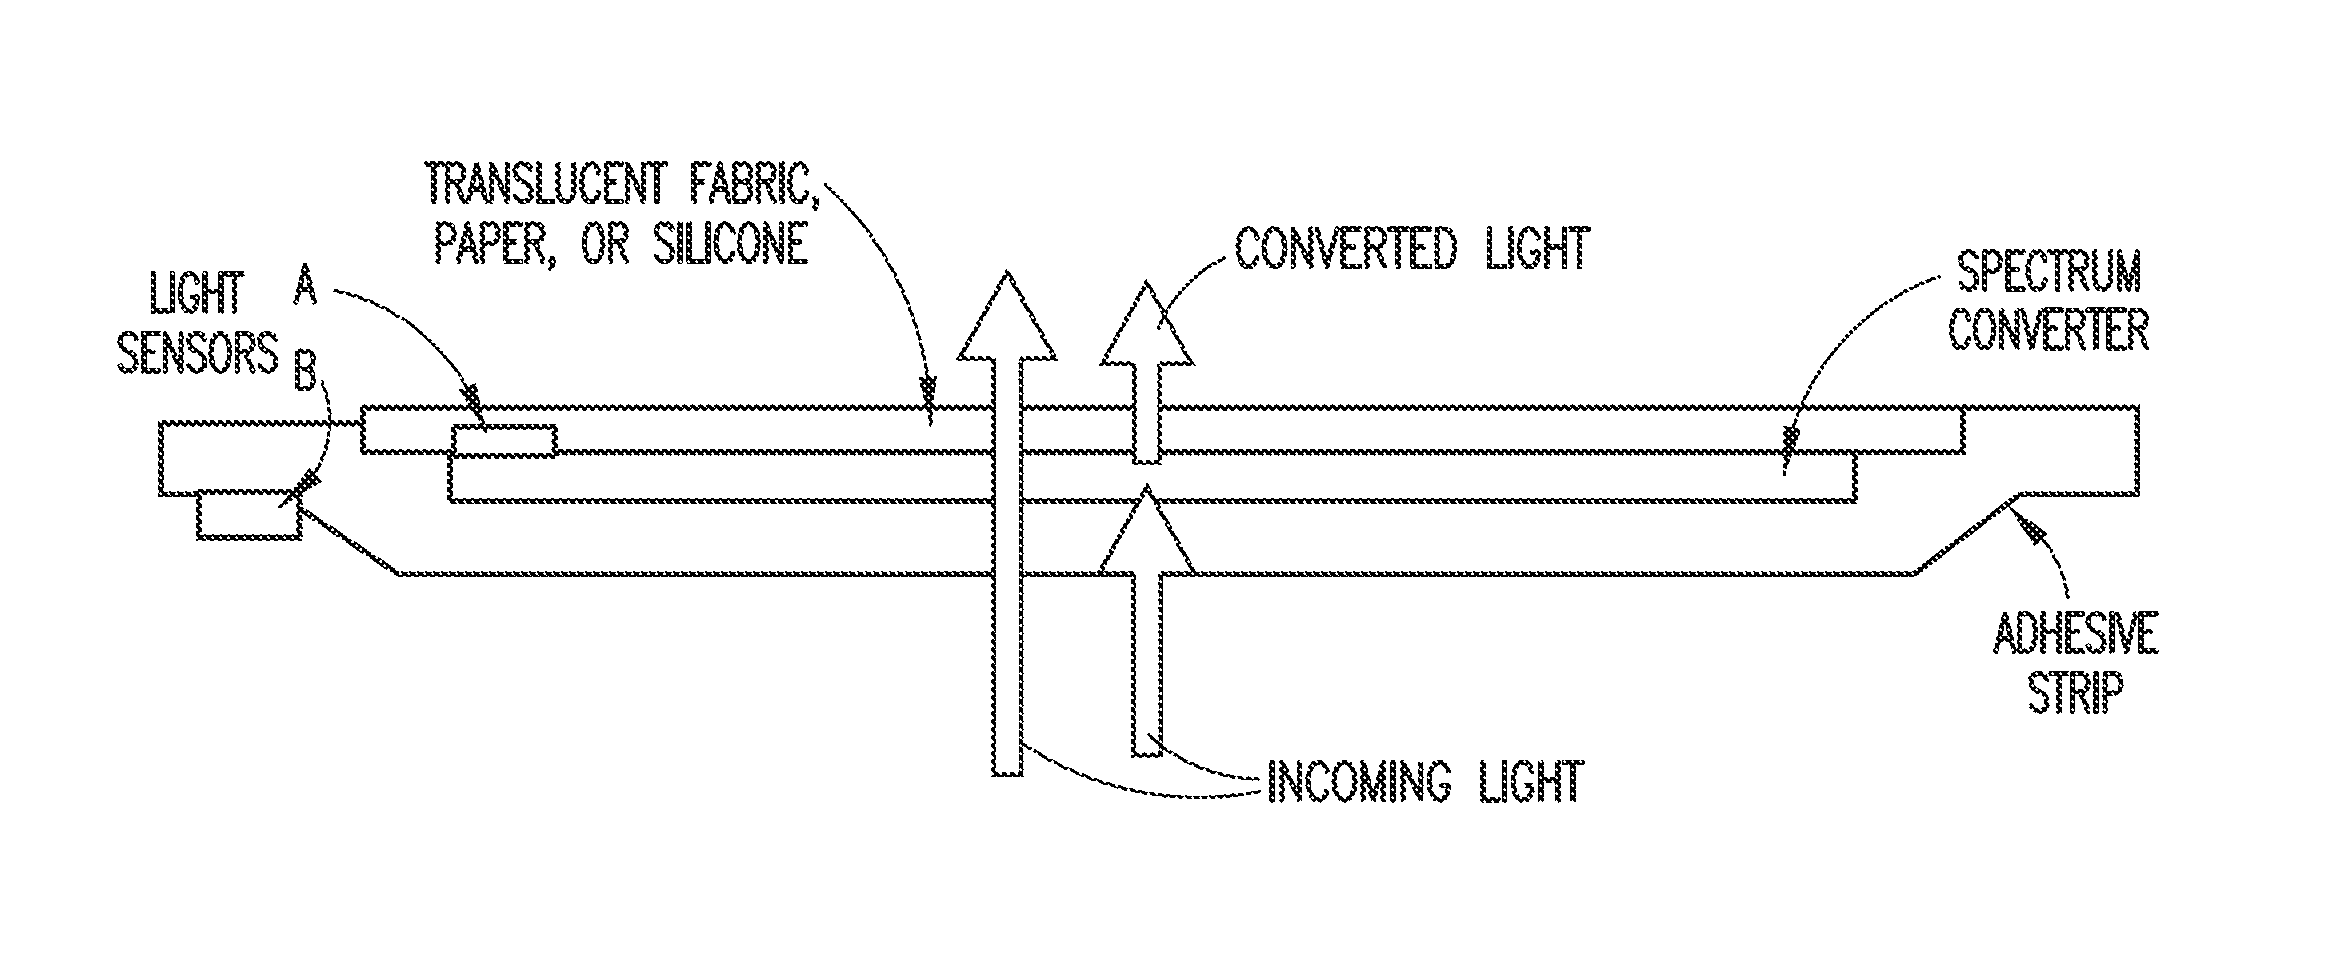 Ambient spectrum light conversion device